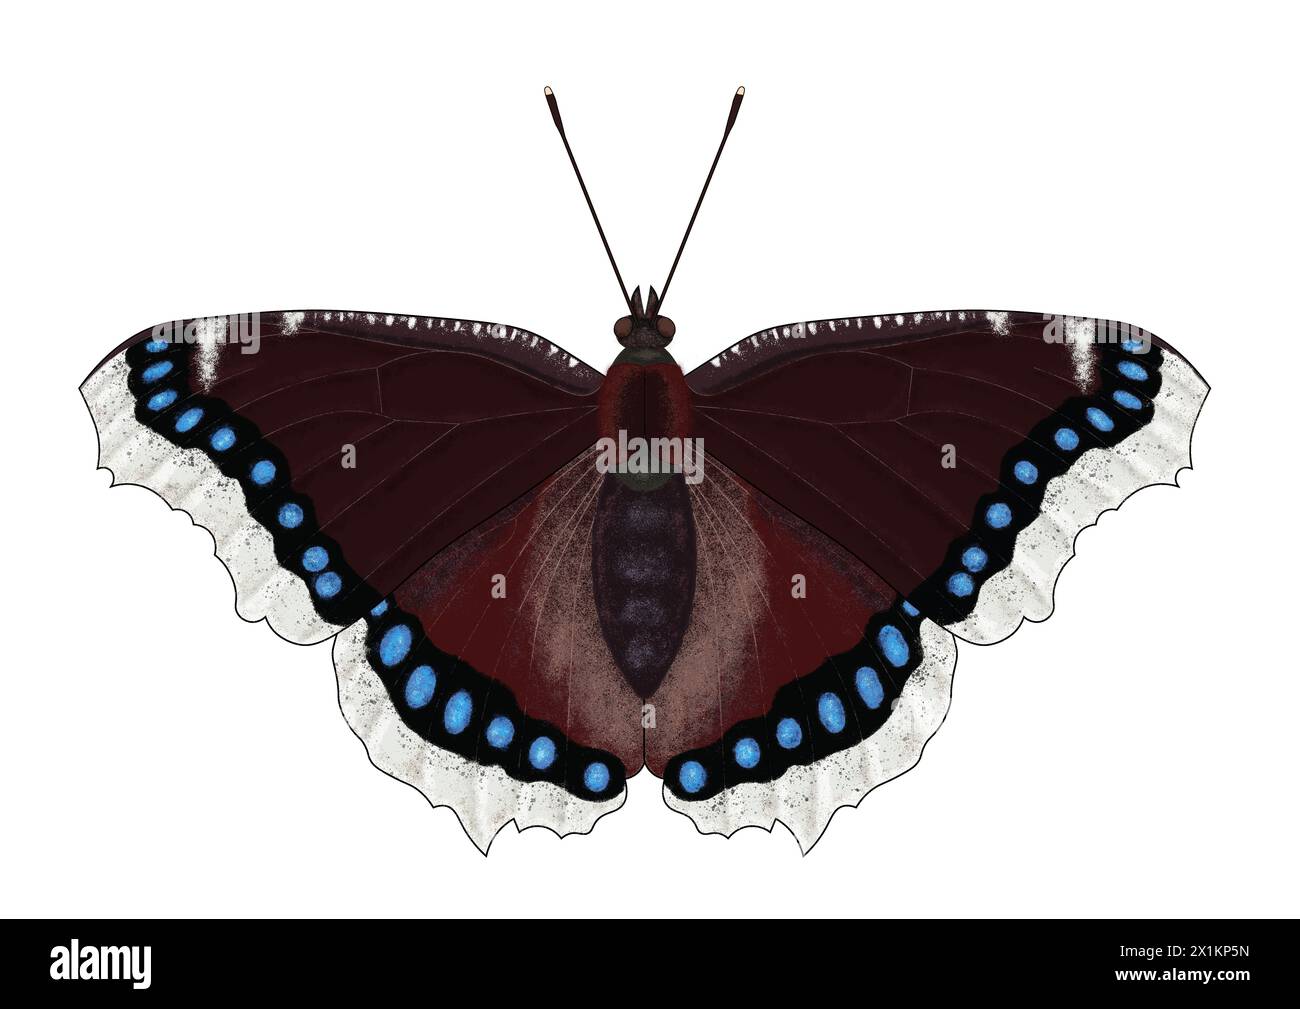 Illustration numérique du papillon Nymphalis antiopa, connu sous le nom de manteau de deuil ou la beauté Camberwell sur fond blanc Banque D'Images